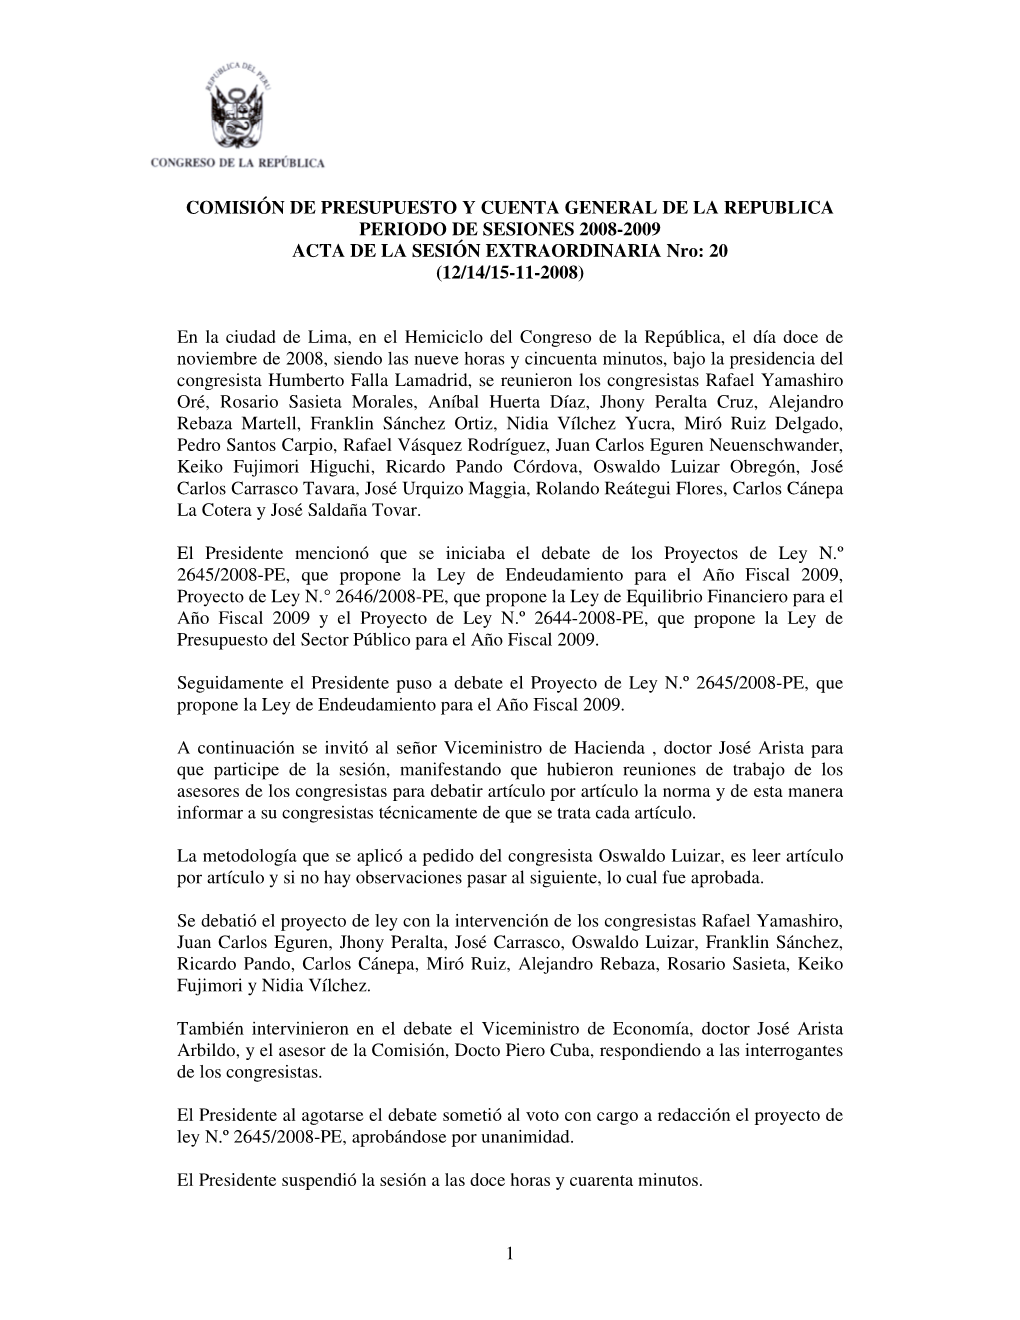 COMISIÓN DE PRESUPUESTO Y CUENTA GENERAL DE LA REPUBLICA PERIODO DE SESIONES 2008-2009 ACTA DE LA SESIÓN EXTRAORDINARIA Nro: 20 (12/14/15-11-2008)